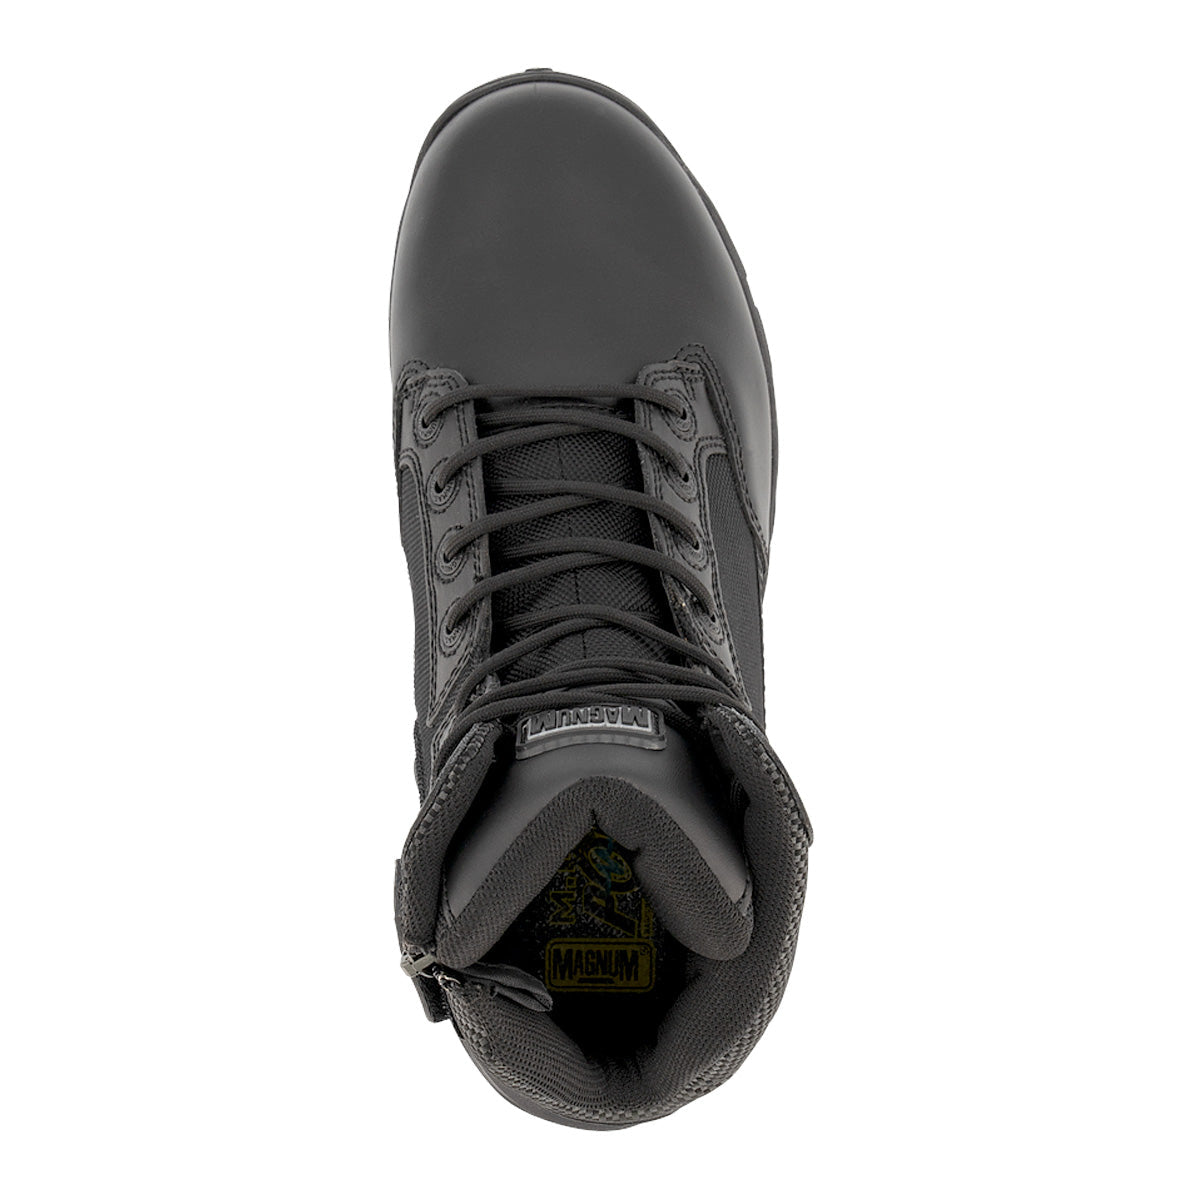 Magnum Strike Force 6.0 Side-Zip Waterproof Boot Black Footwear Magnum Footwear Tactical Gear Supplier Tactical Distributors Australia